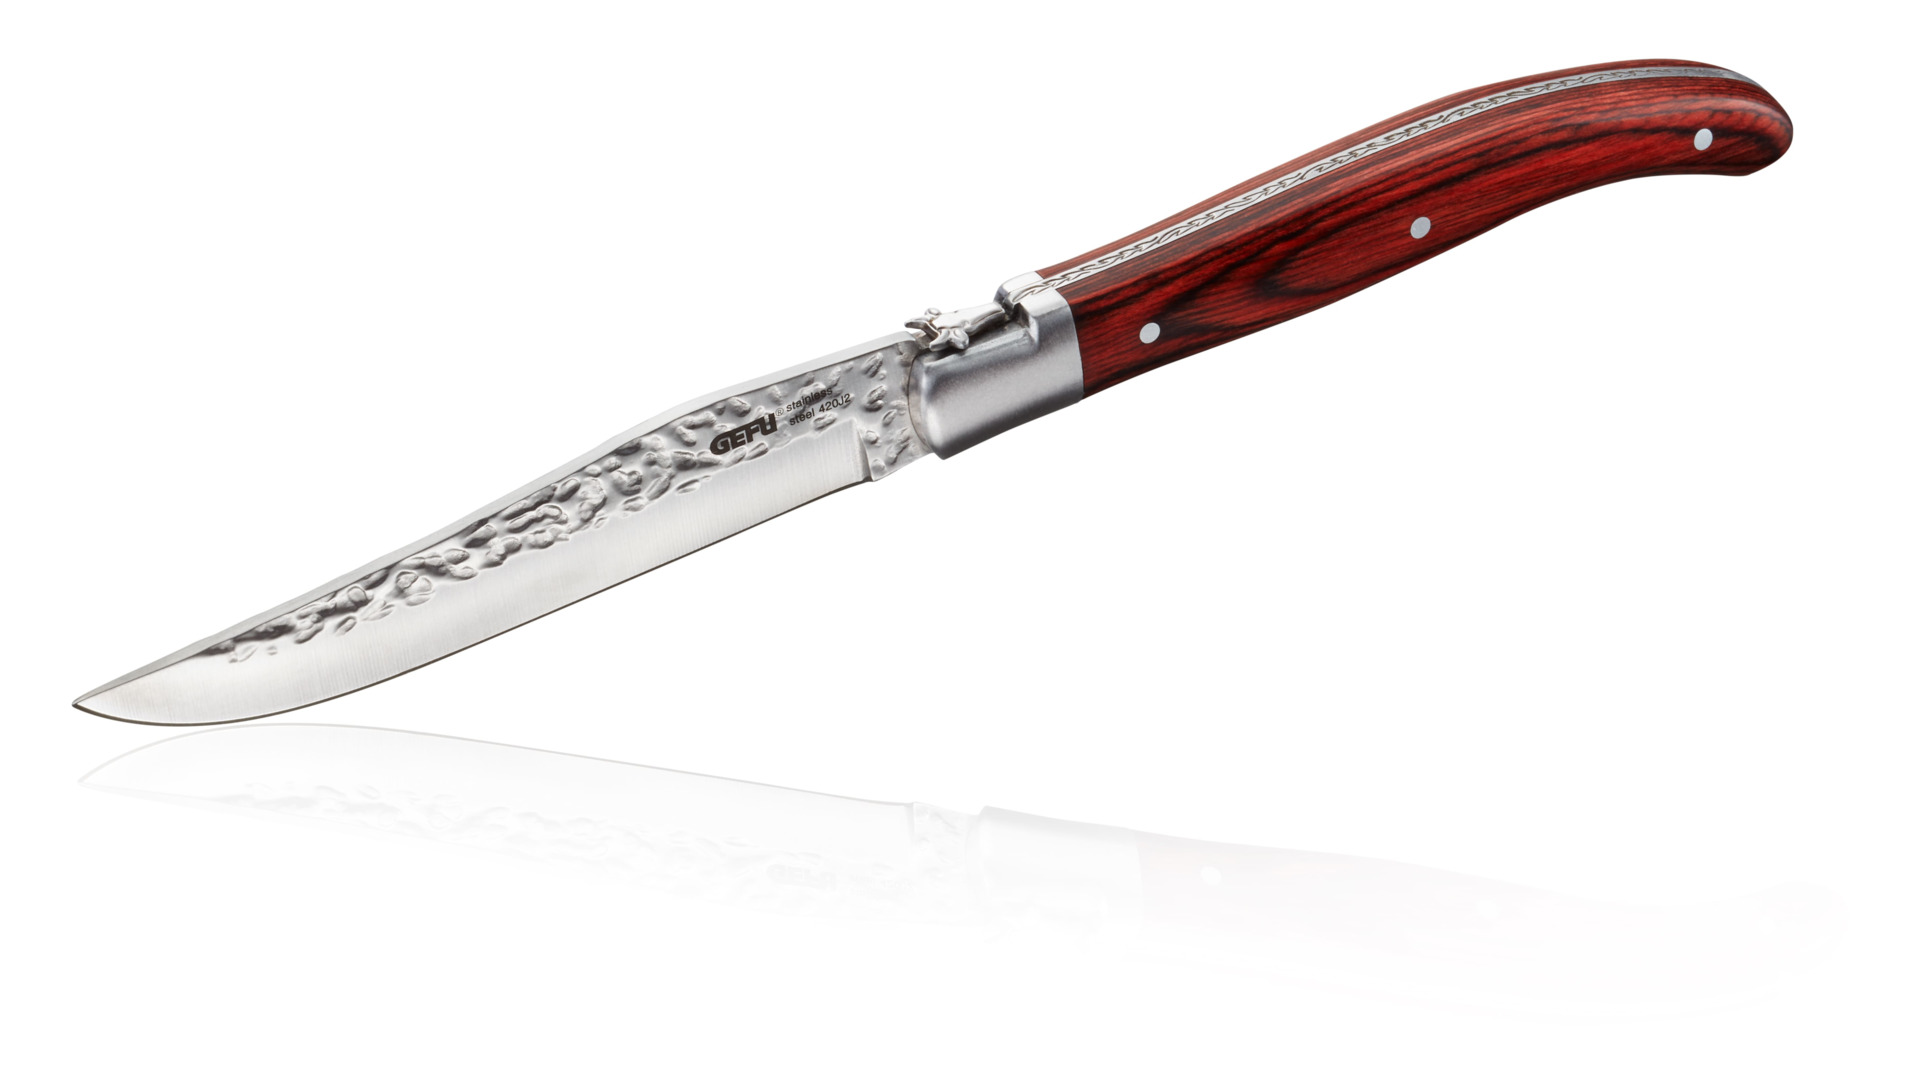 Набор ножей для стейка Gefu Ранчо, 6 предметов, сталь нержавеющая